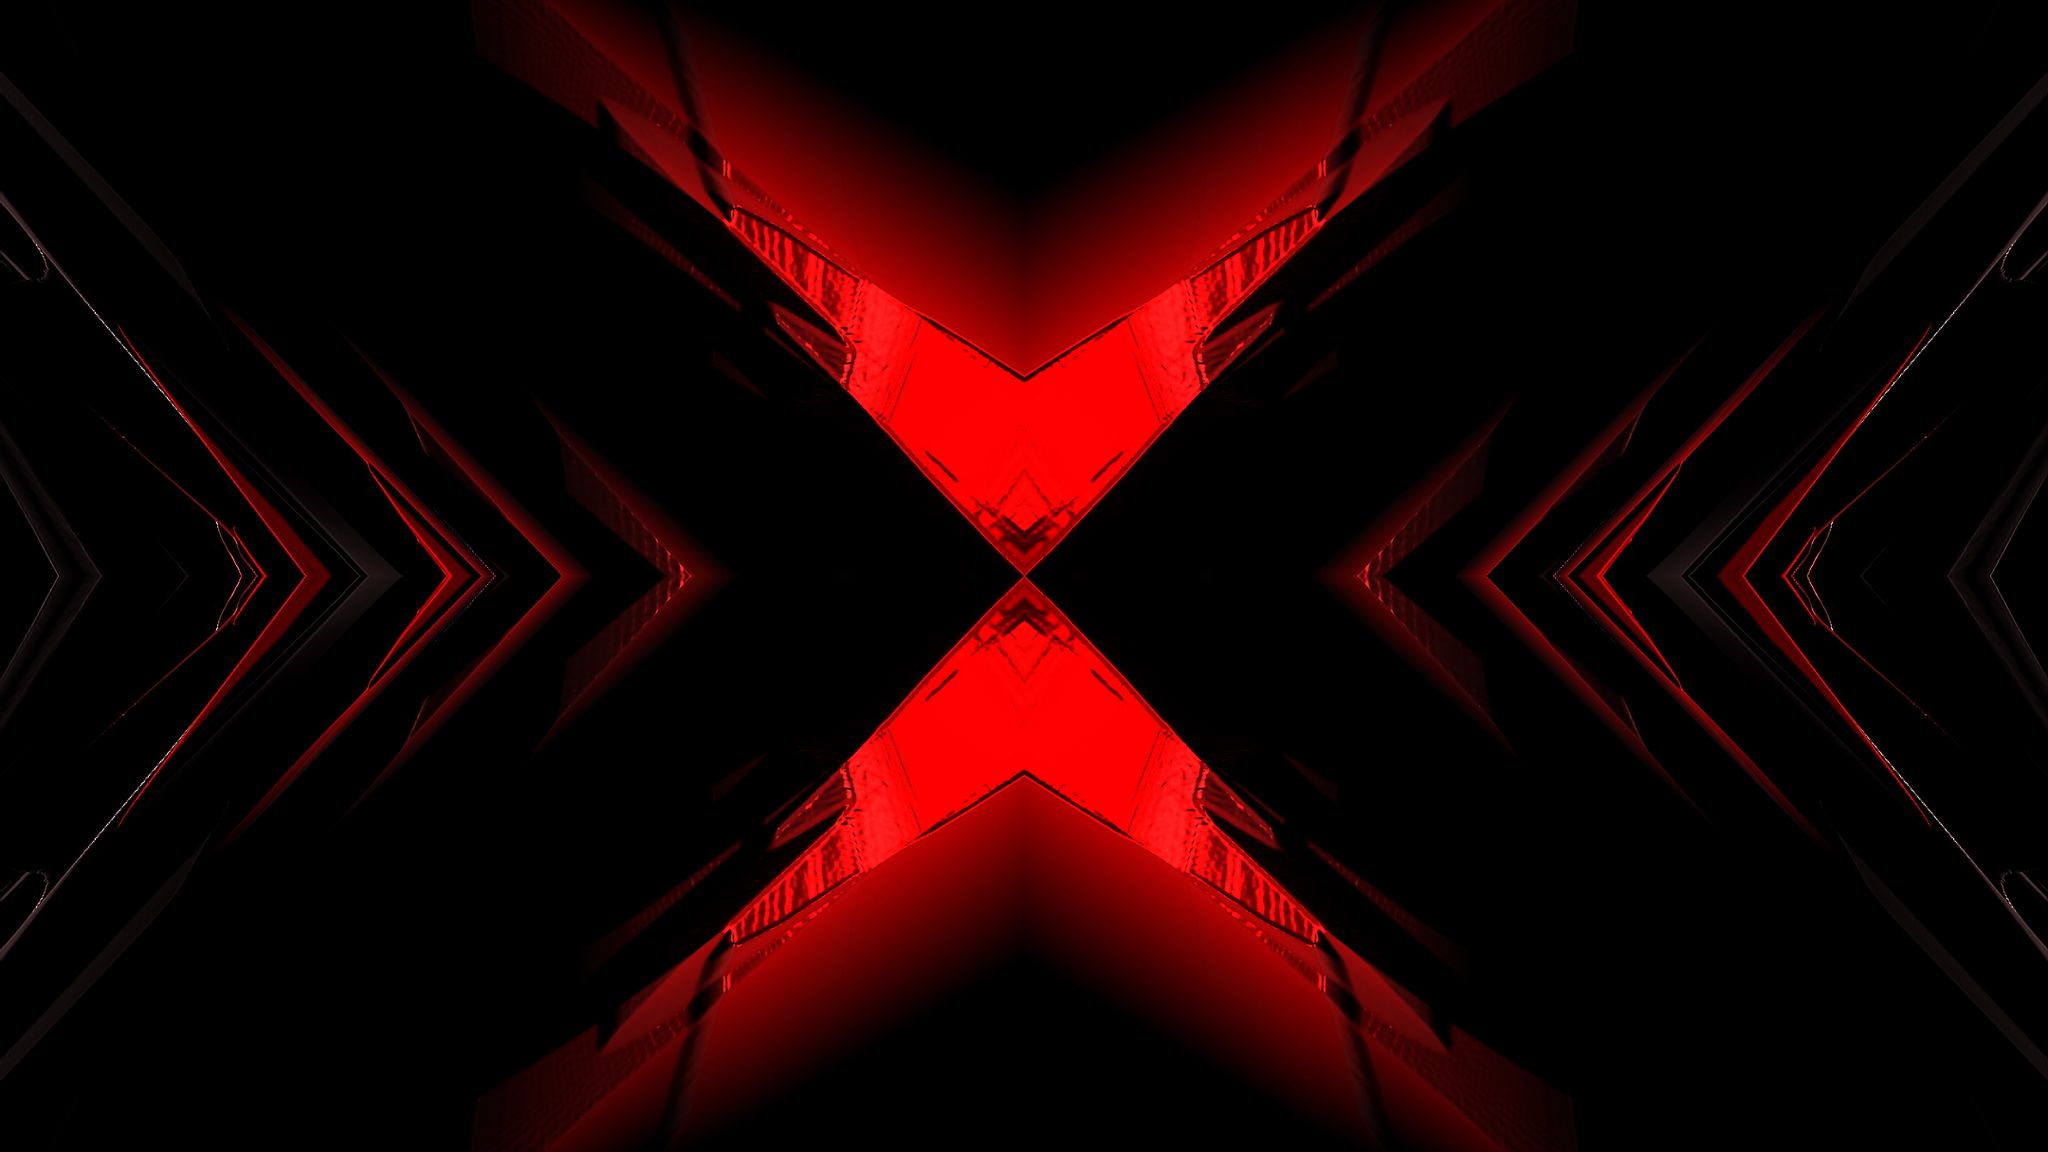 Abstraction đỏ đen (Red and black abstraction): Sự kết hợp giữa màu đỏ và đen đã tạo nên một tác phẩm trừu tượng đầy năng lượng và cá tính. Các mảng màu đan xen và phối hợp tạo ra nét đặc trưng cho các tác phẩm trừu tượng. Cùng thưởng thức tác phẩm này bằng cách bấm vào đây.